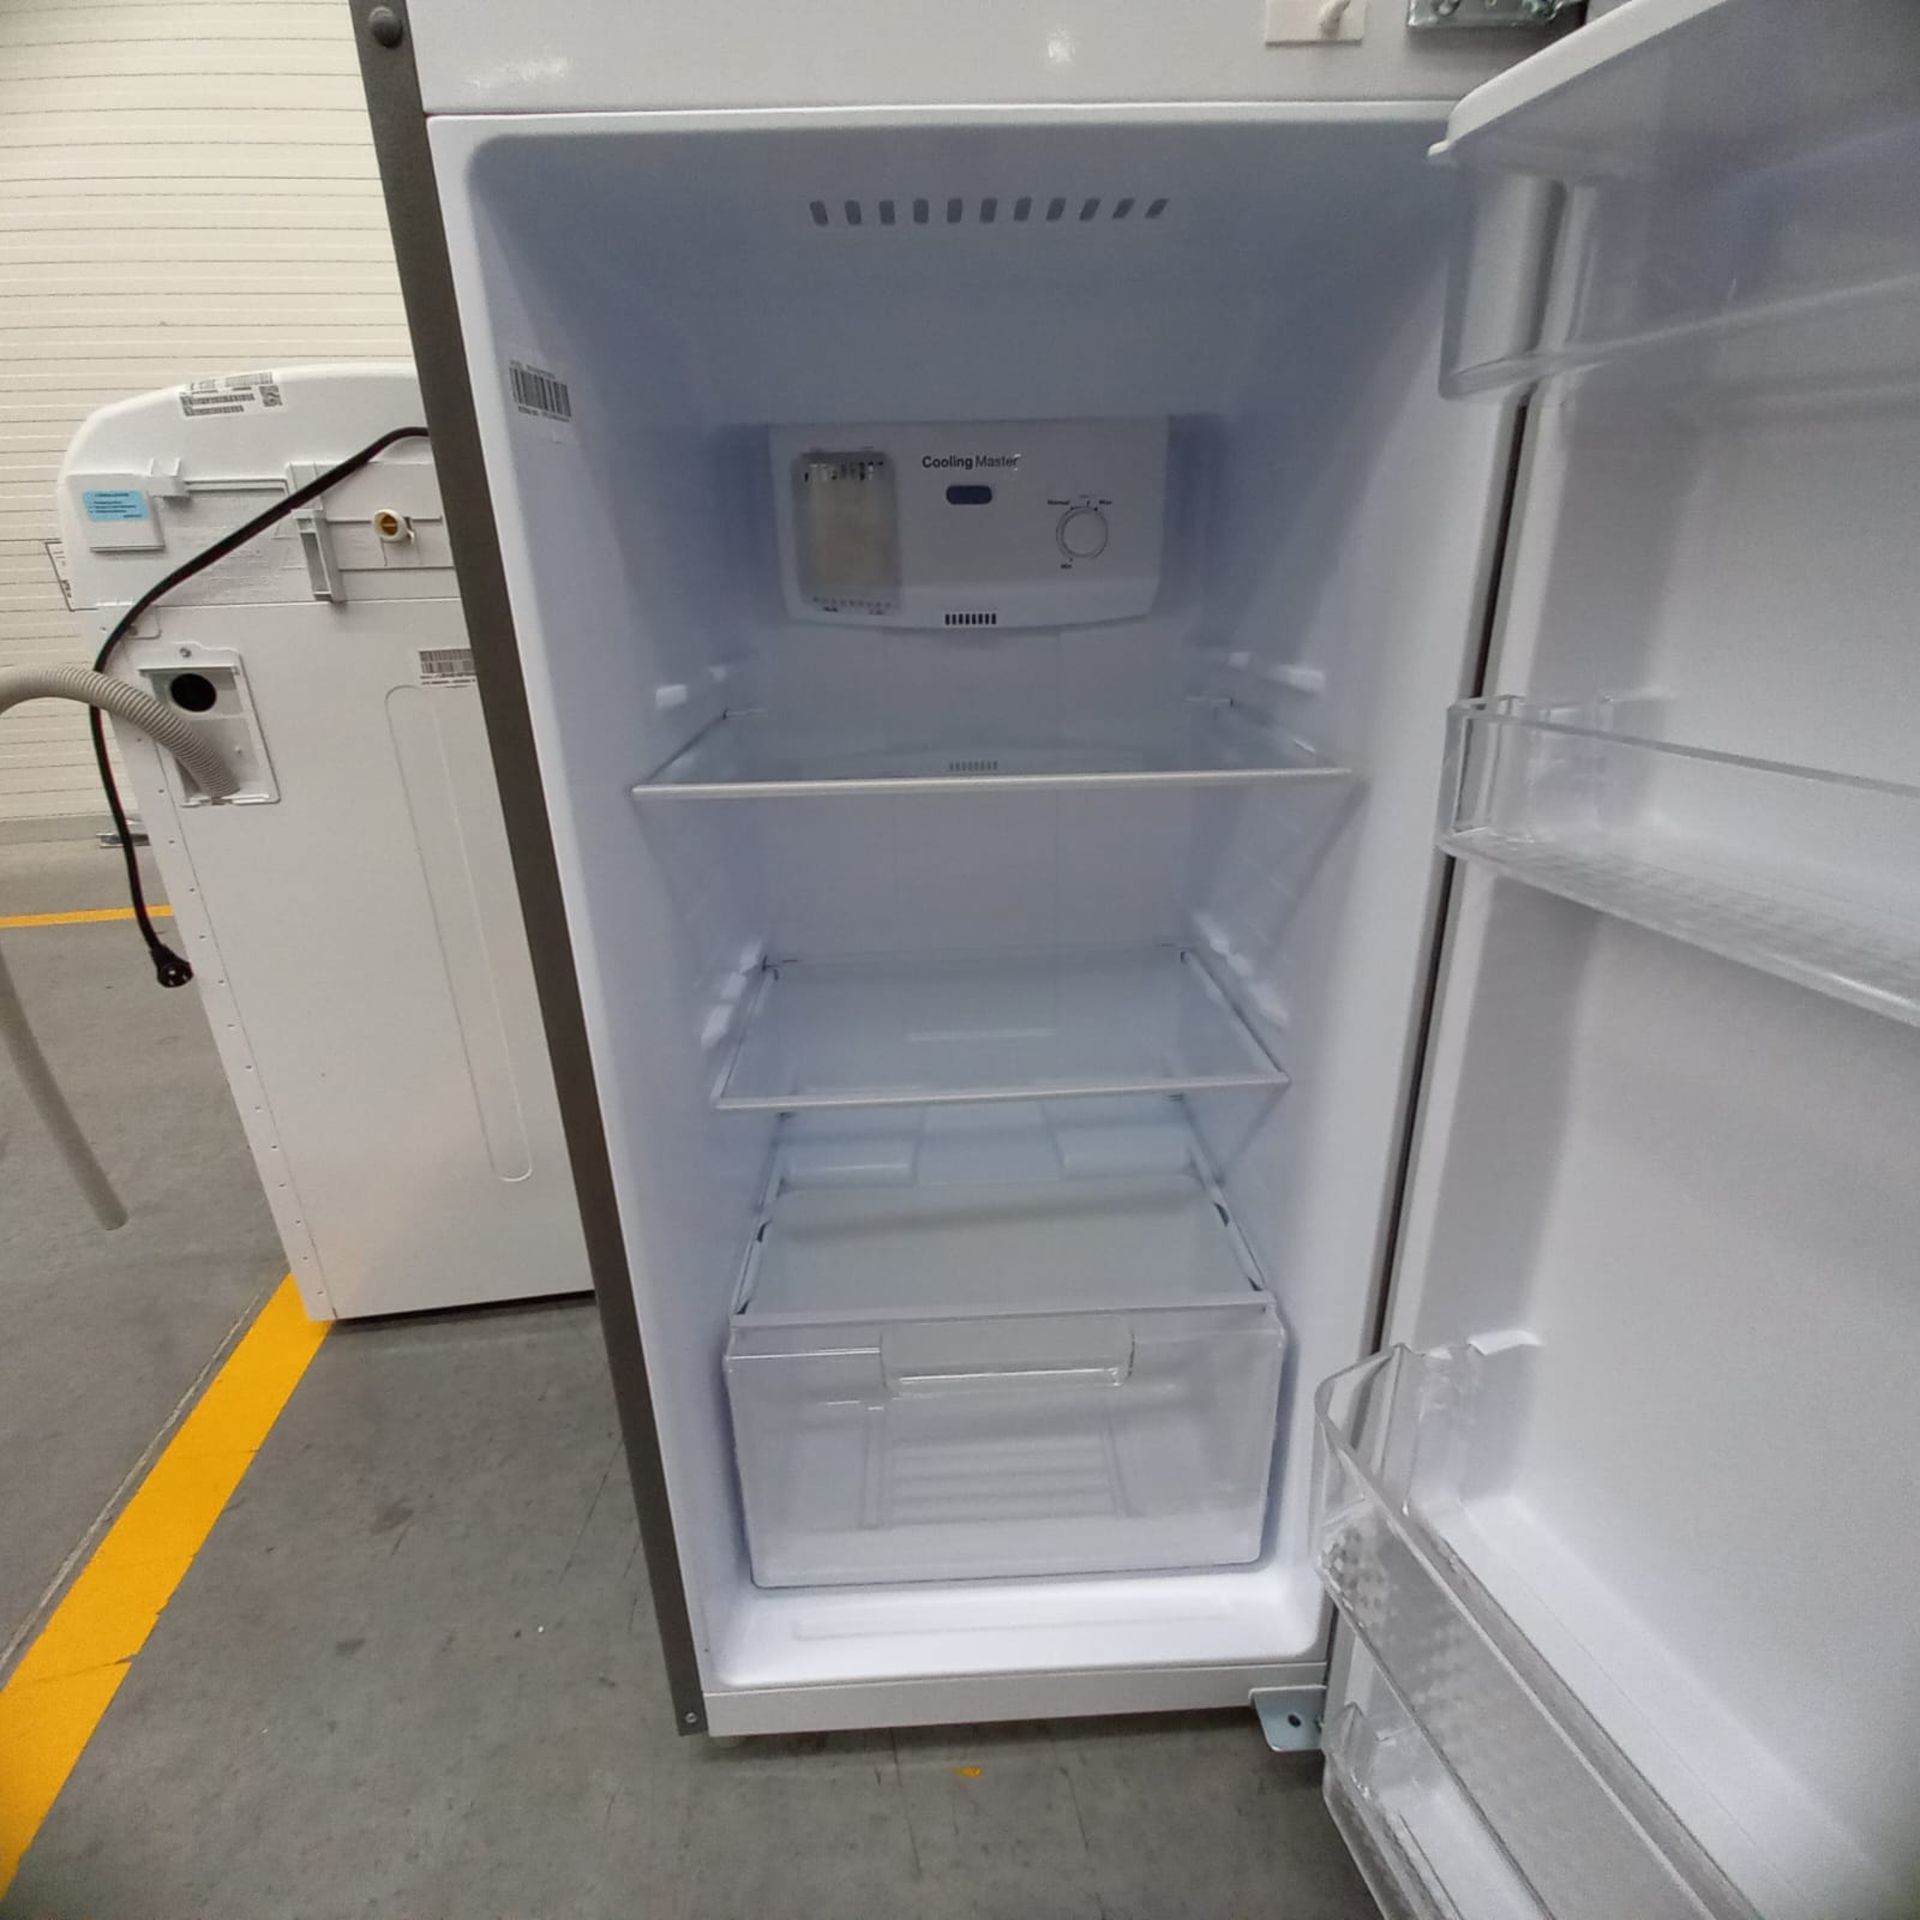 Lote De 2 Refrigeradores: 1 Refrigerador Marca Mabe, 1 Refrigerador Marca Winia, Distintos Modelos - Image 20 of 23